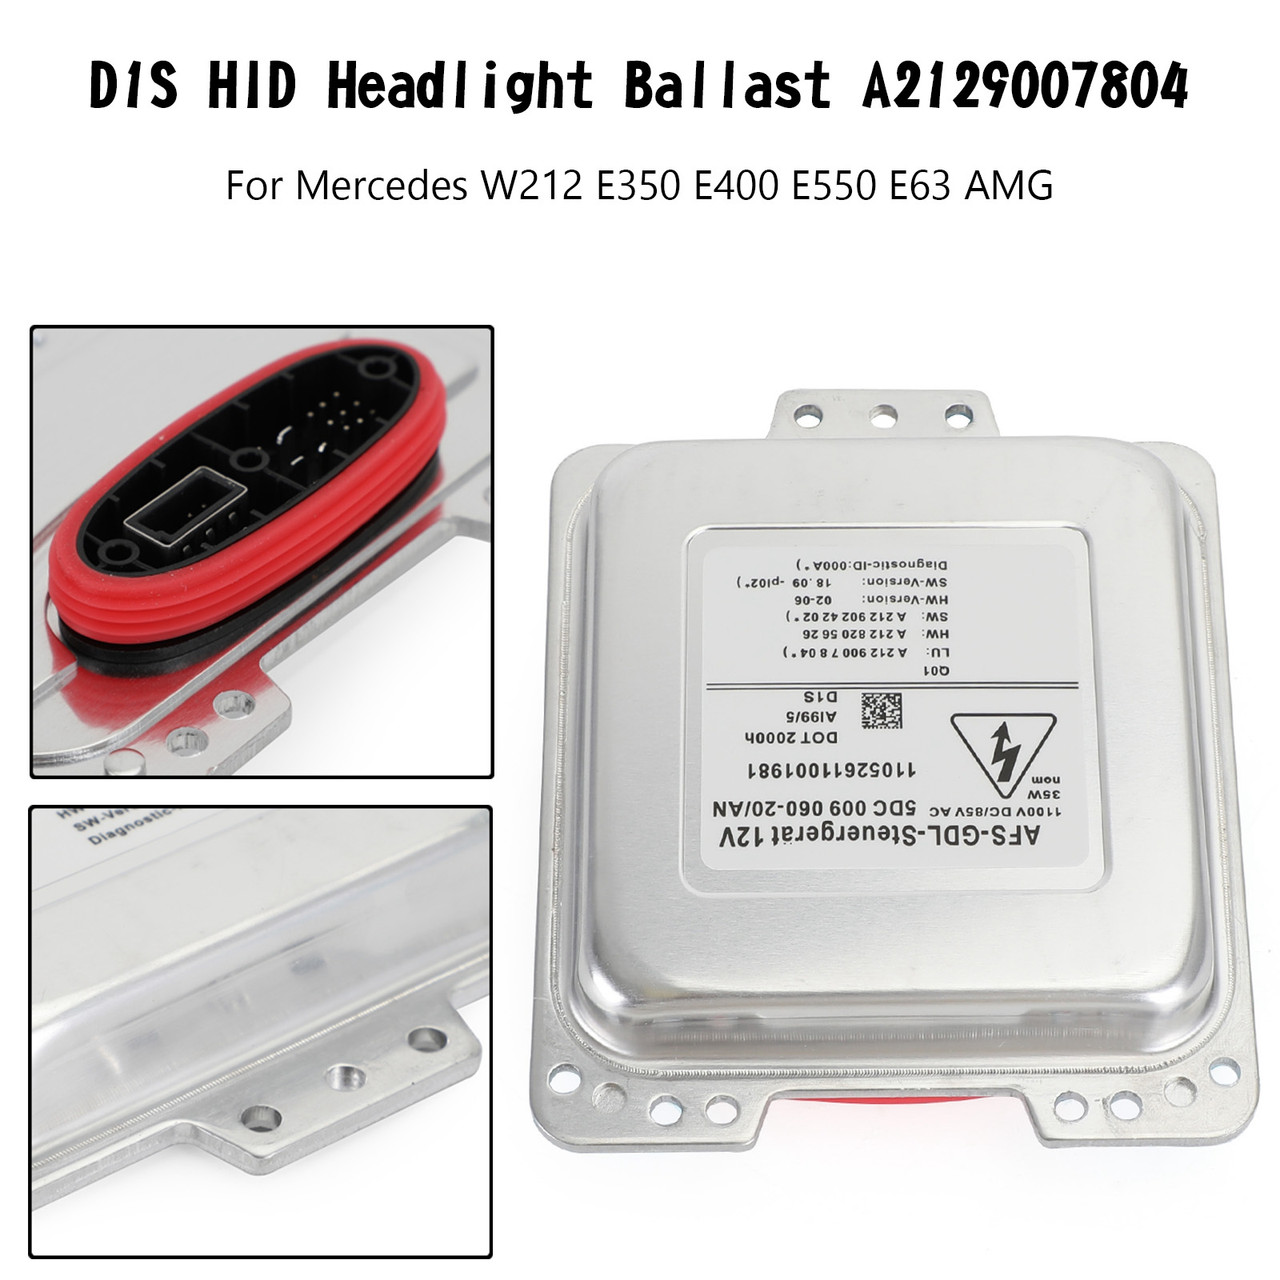 D1S HID Headlight Ballast A2129007804 For Mercedes W212 E350 E400 E550 E63 AMG